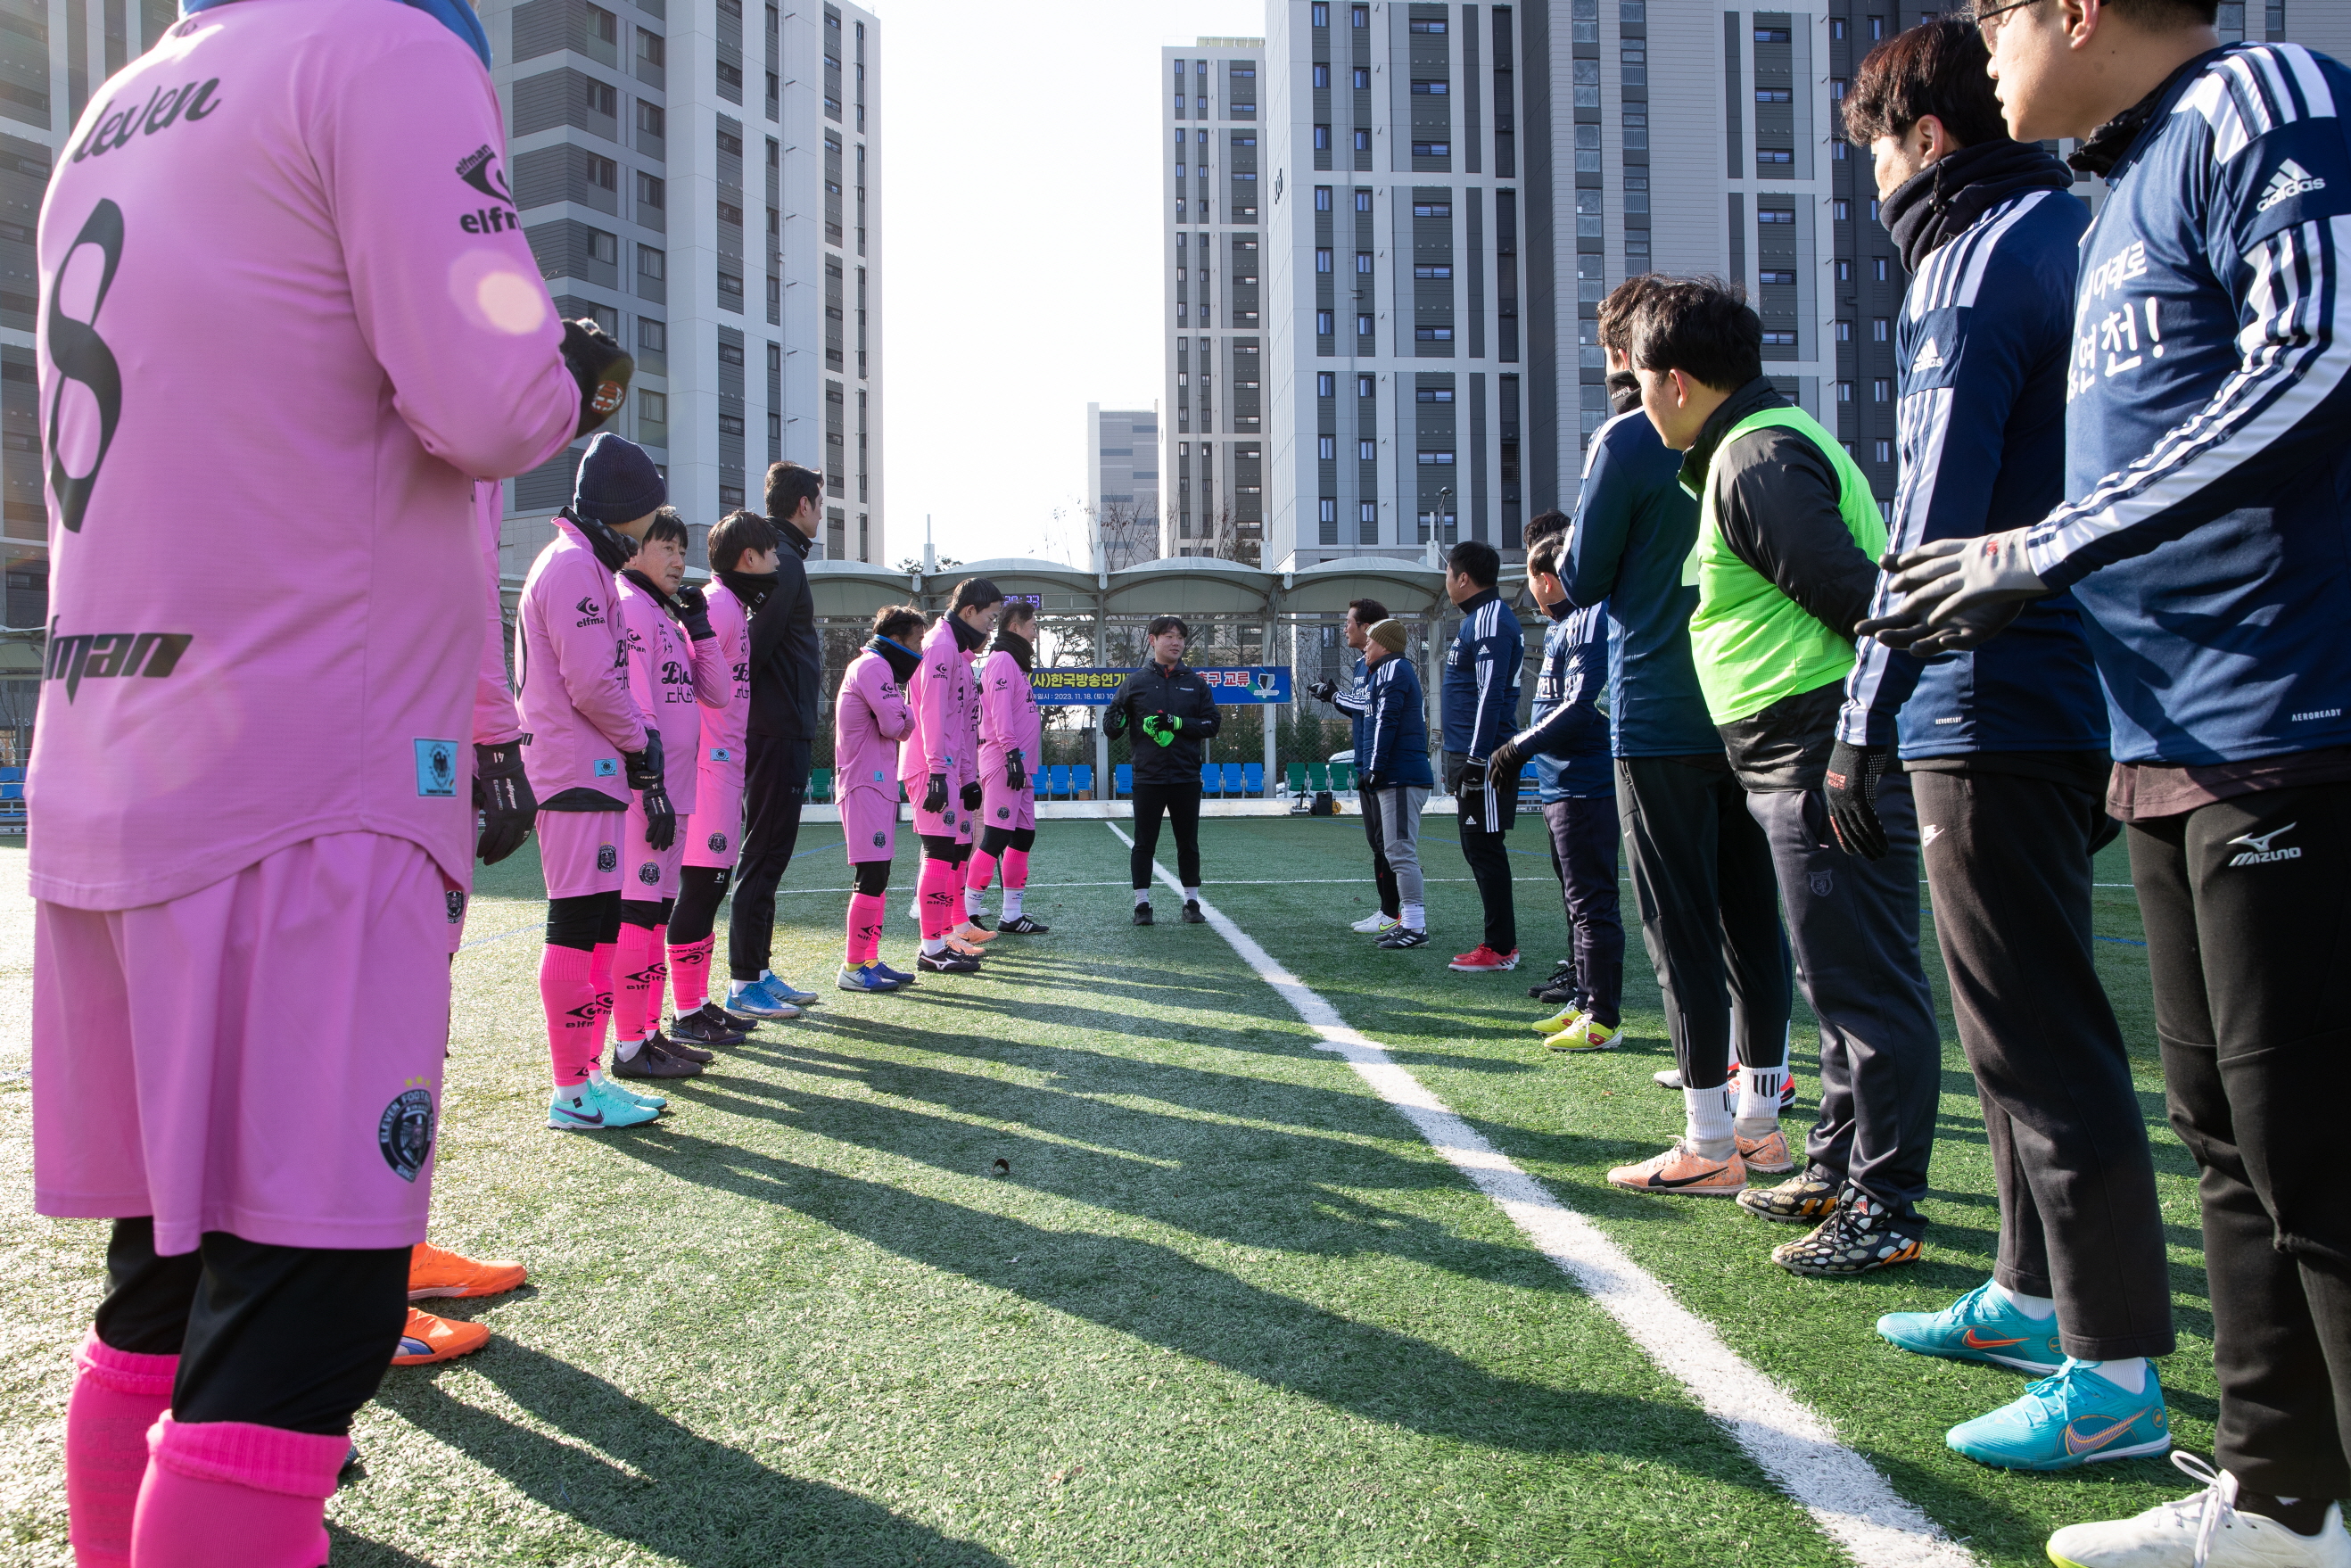 [23. 11. 18.] 한국방송연기자협회 친선축구대회 이미지 4 - 본문에 자세한설명을 제공합니다.